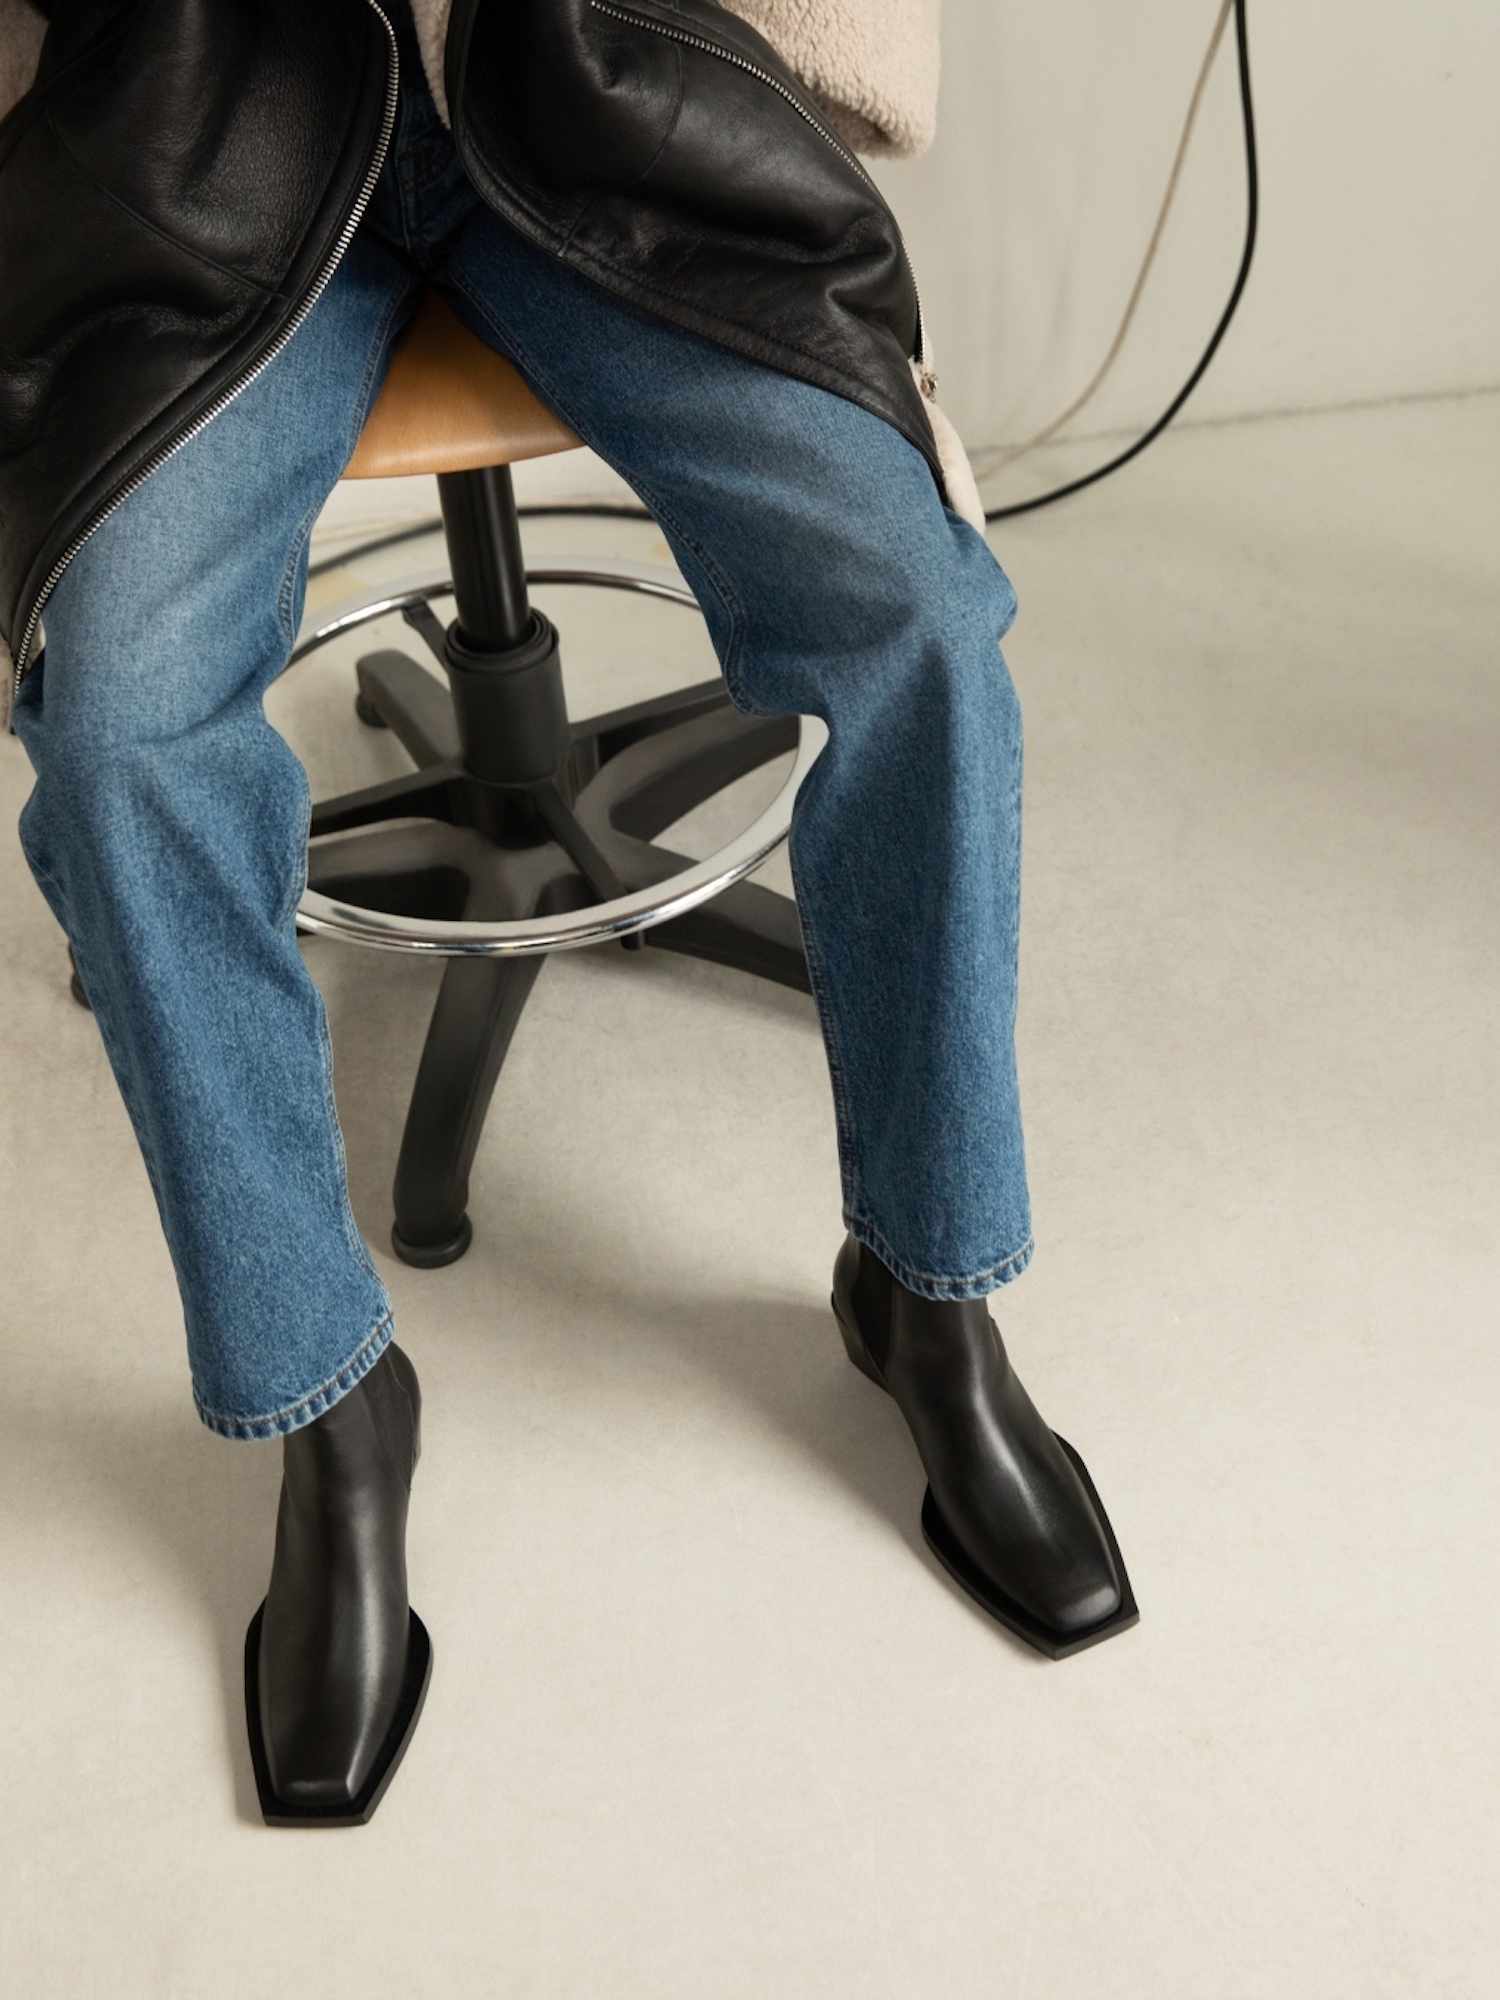 Uma pessoa próxima de uma pessoa em jeans com pernas retas, uma jaqueta de couro feita de couro cortado e botas pretas Chelsea com um dedo do pé quadrado